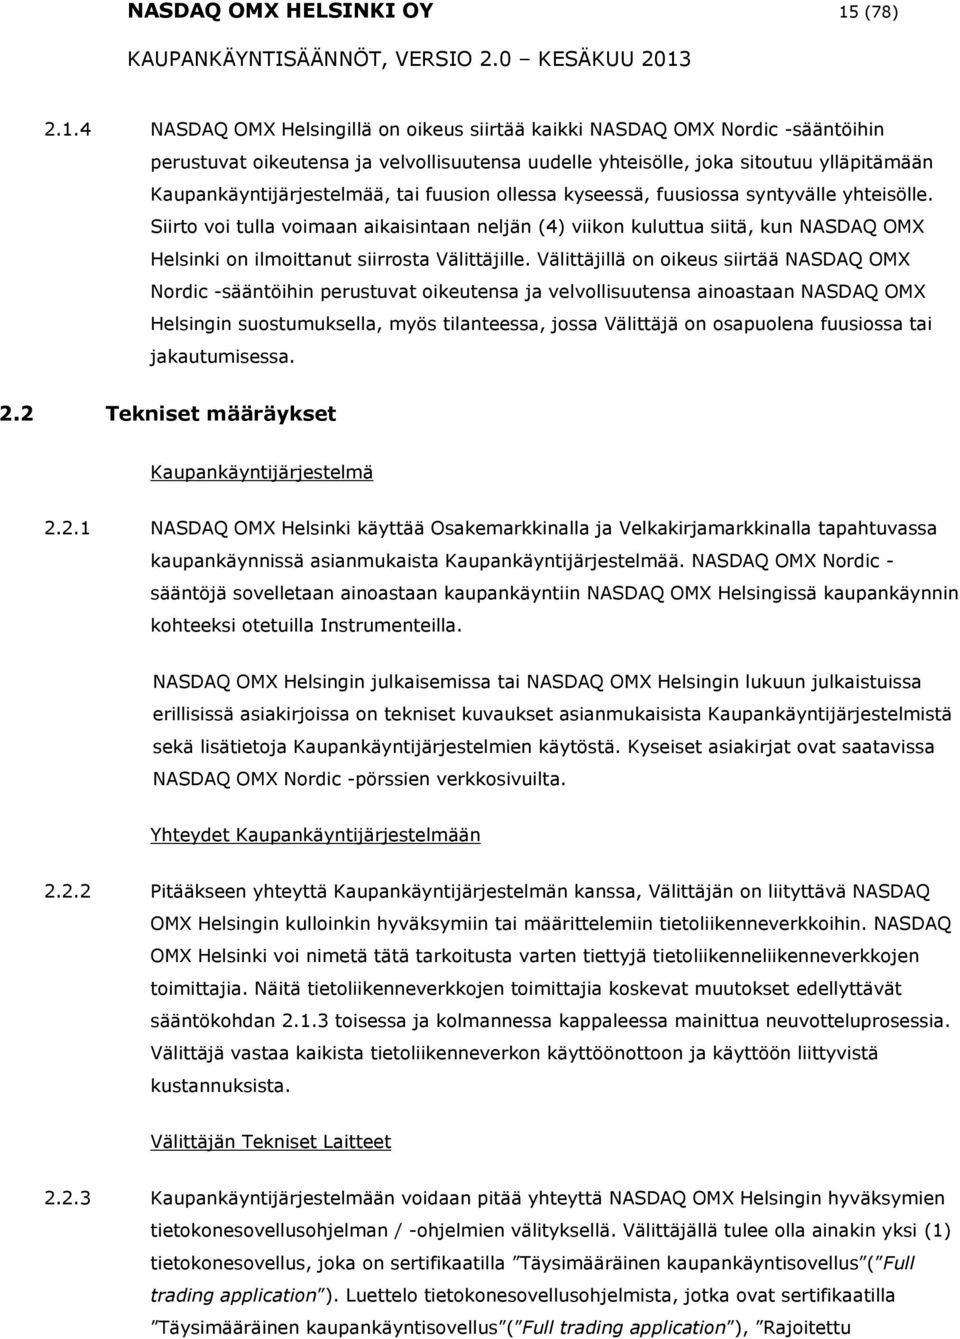 4 NASDAQ OMX Helsingillä n ikeus siirtää kaikki NASDAQ OMX Nrdic -sääntöihin perustuvat ikeutensa ja velvllisuutensa uudelle yhteisölle, jka situtuu ylläpitämään Kaupankäyntijärjestelmää, tai fuusin